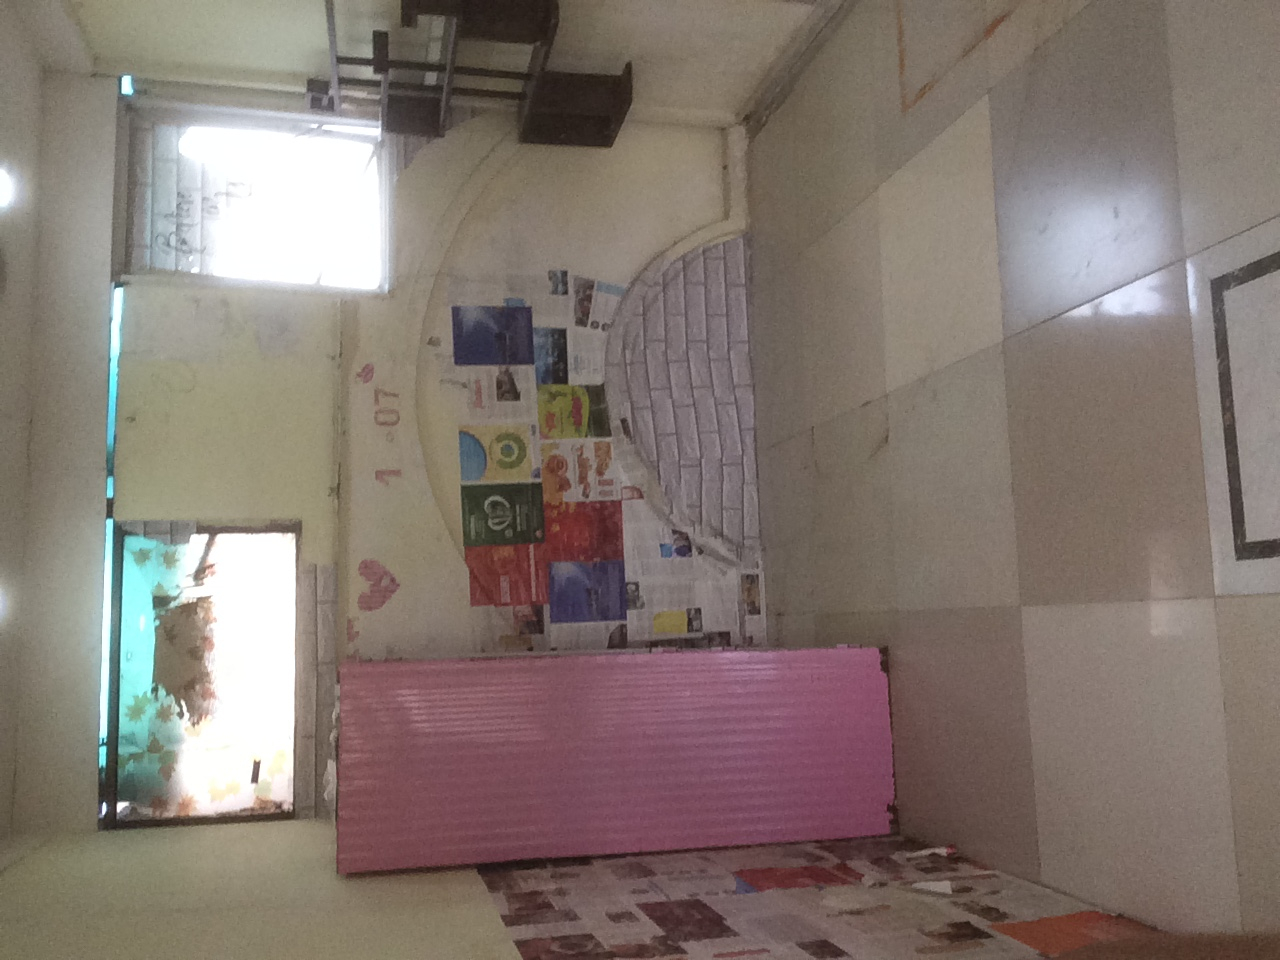 Còn 5 phòng trọ cho thuê tại Q.6, gần chợ Minh Phụng, có bãi xe, gác lửng, toilet riêng